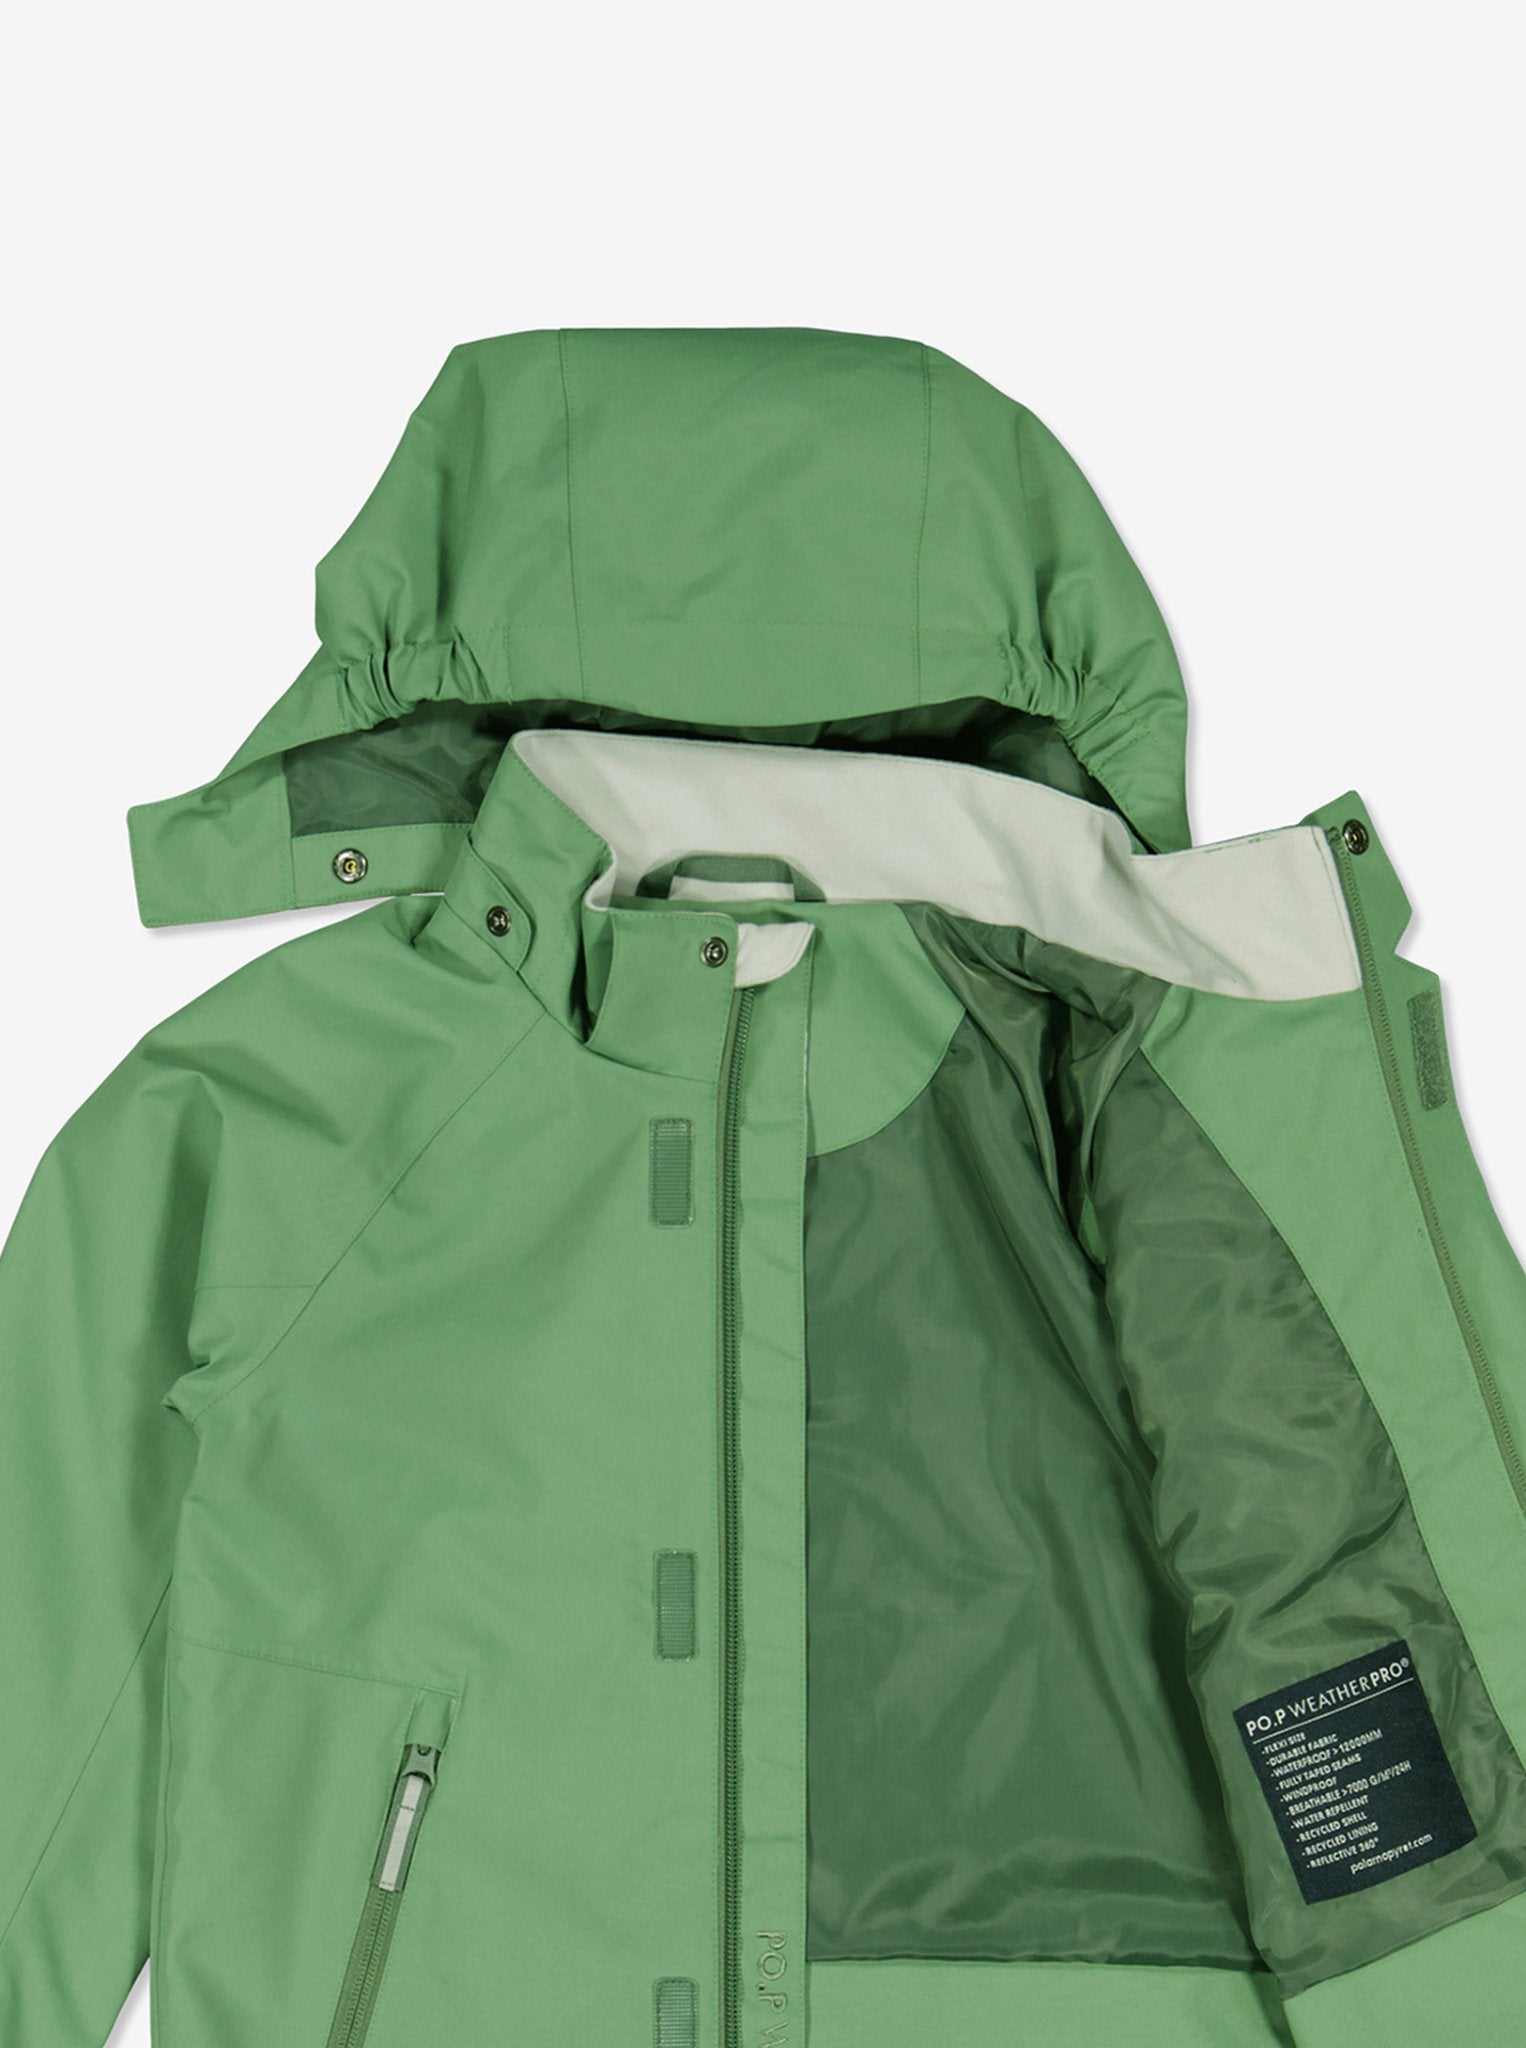 Green Kids Waterproof Jacket from Polarn O. Pyret Kidswear.  Eco friendly kids jackets